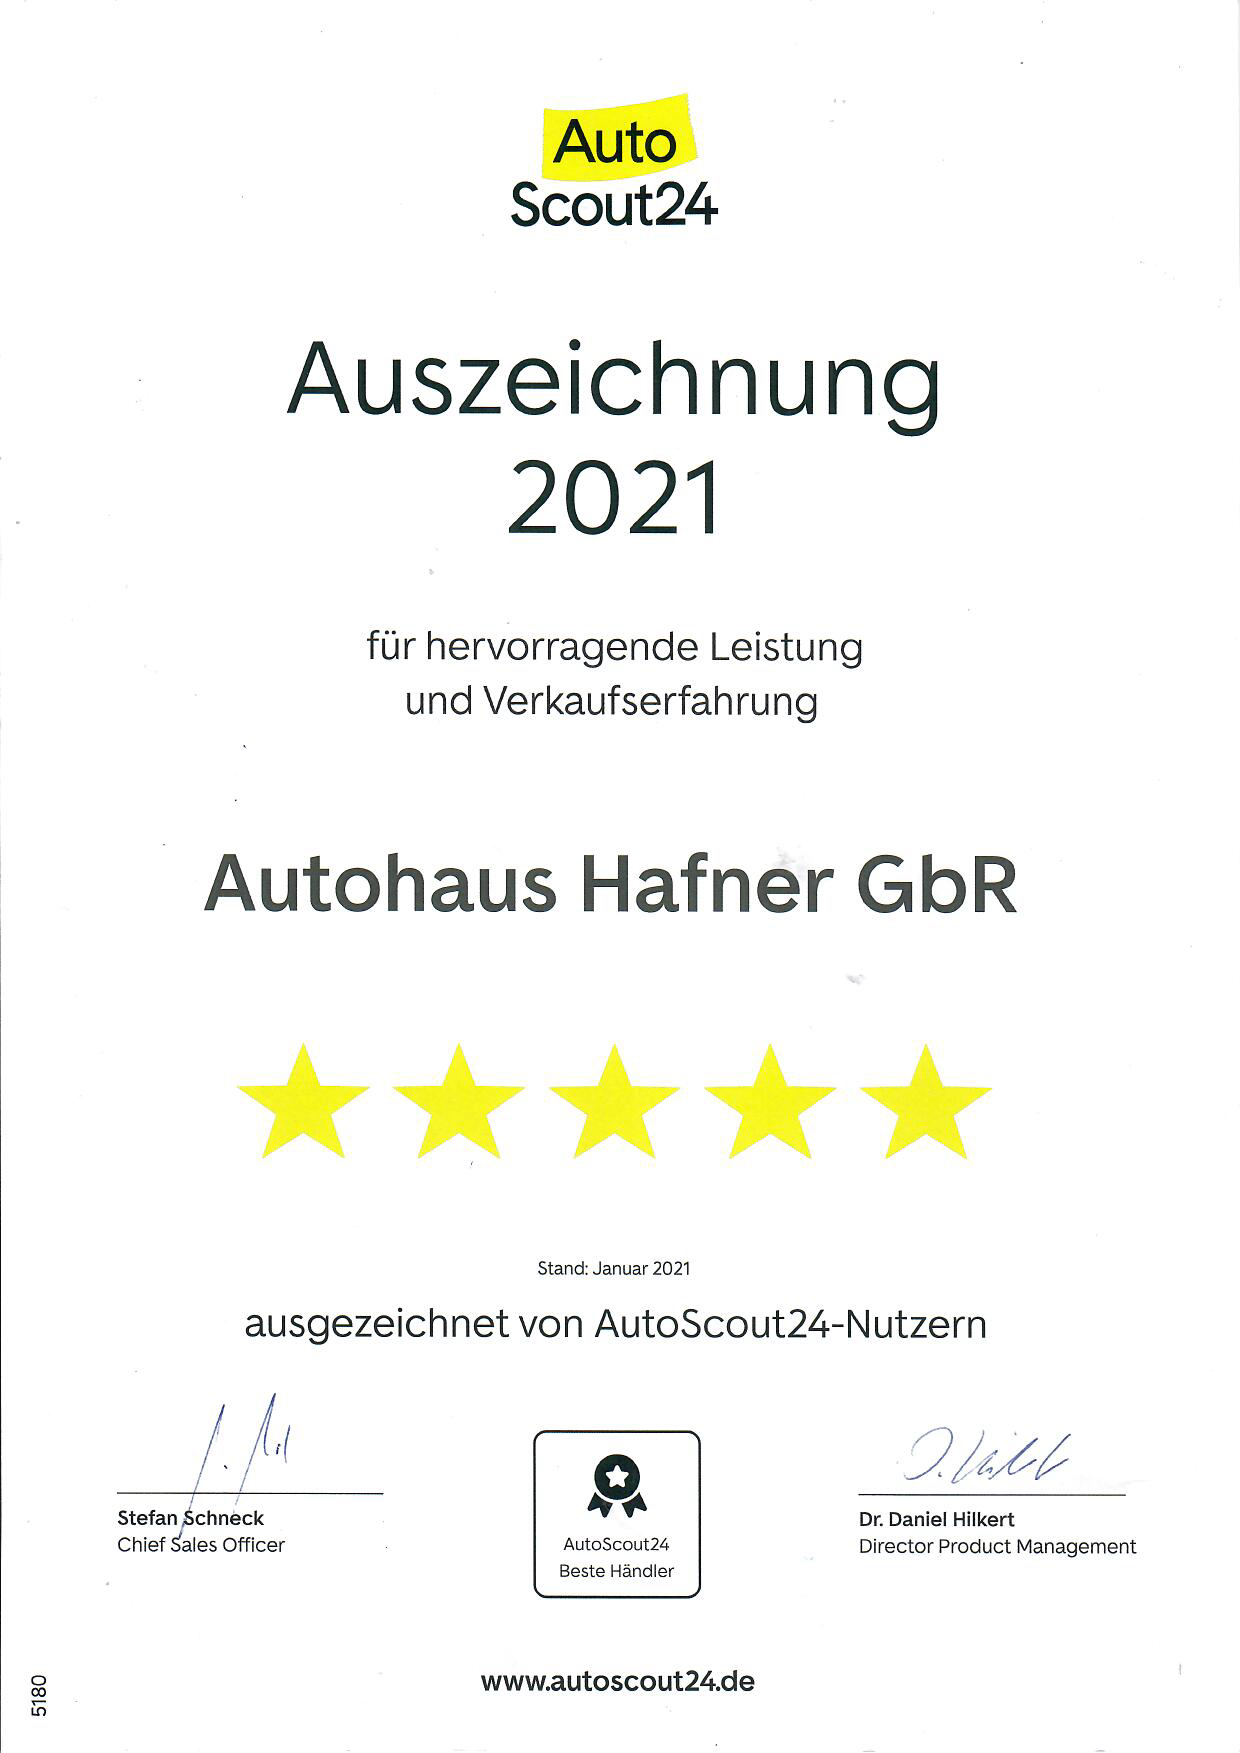 Auszeichnung 2021 Auto Scout24 Autohaus Hafner